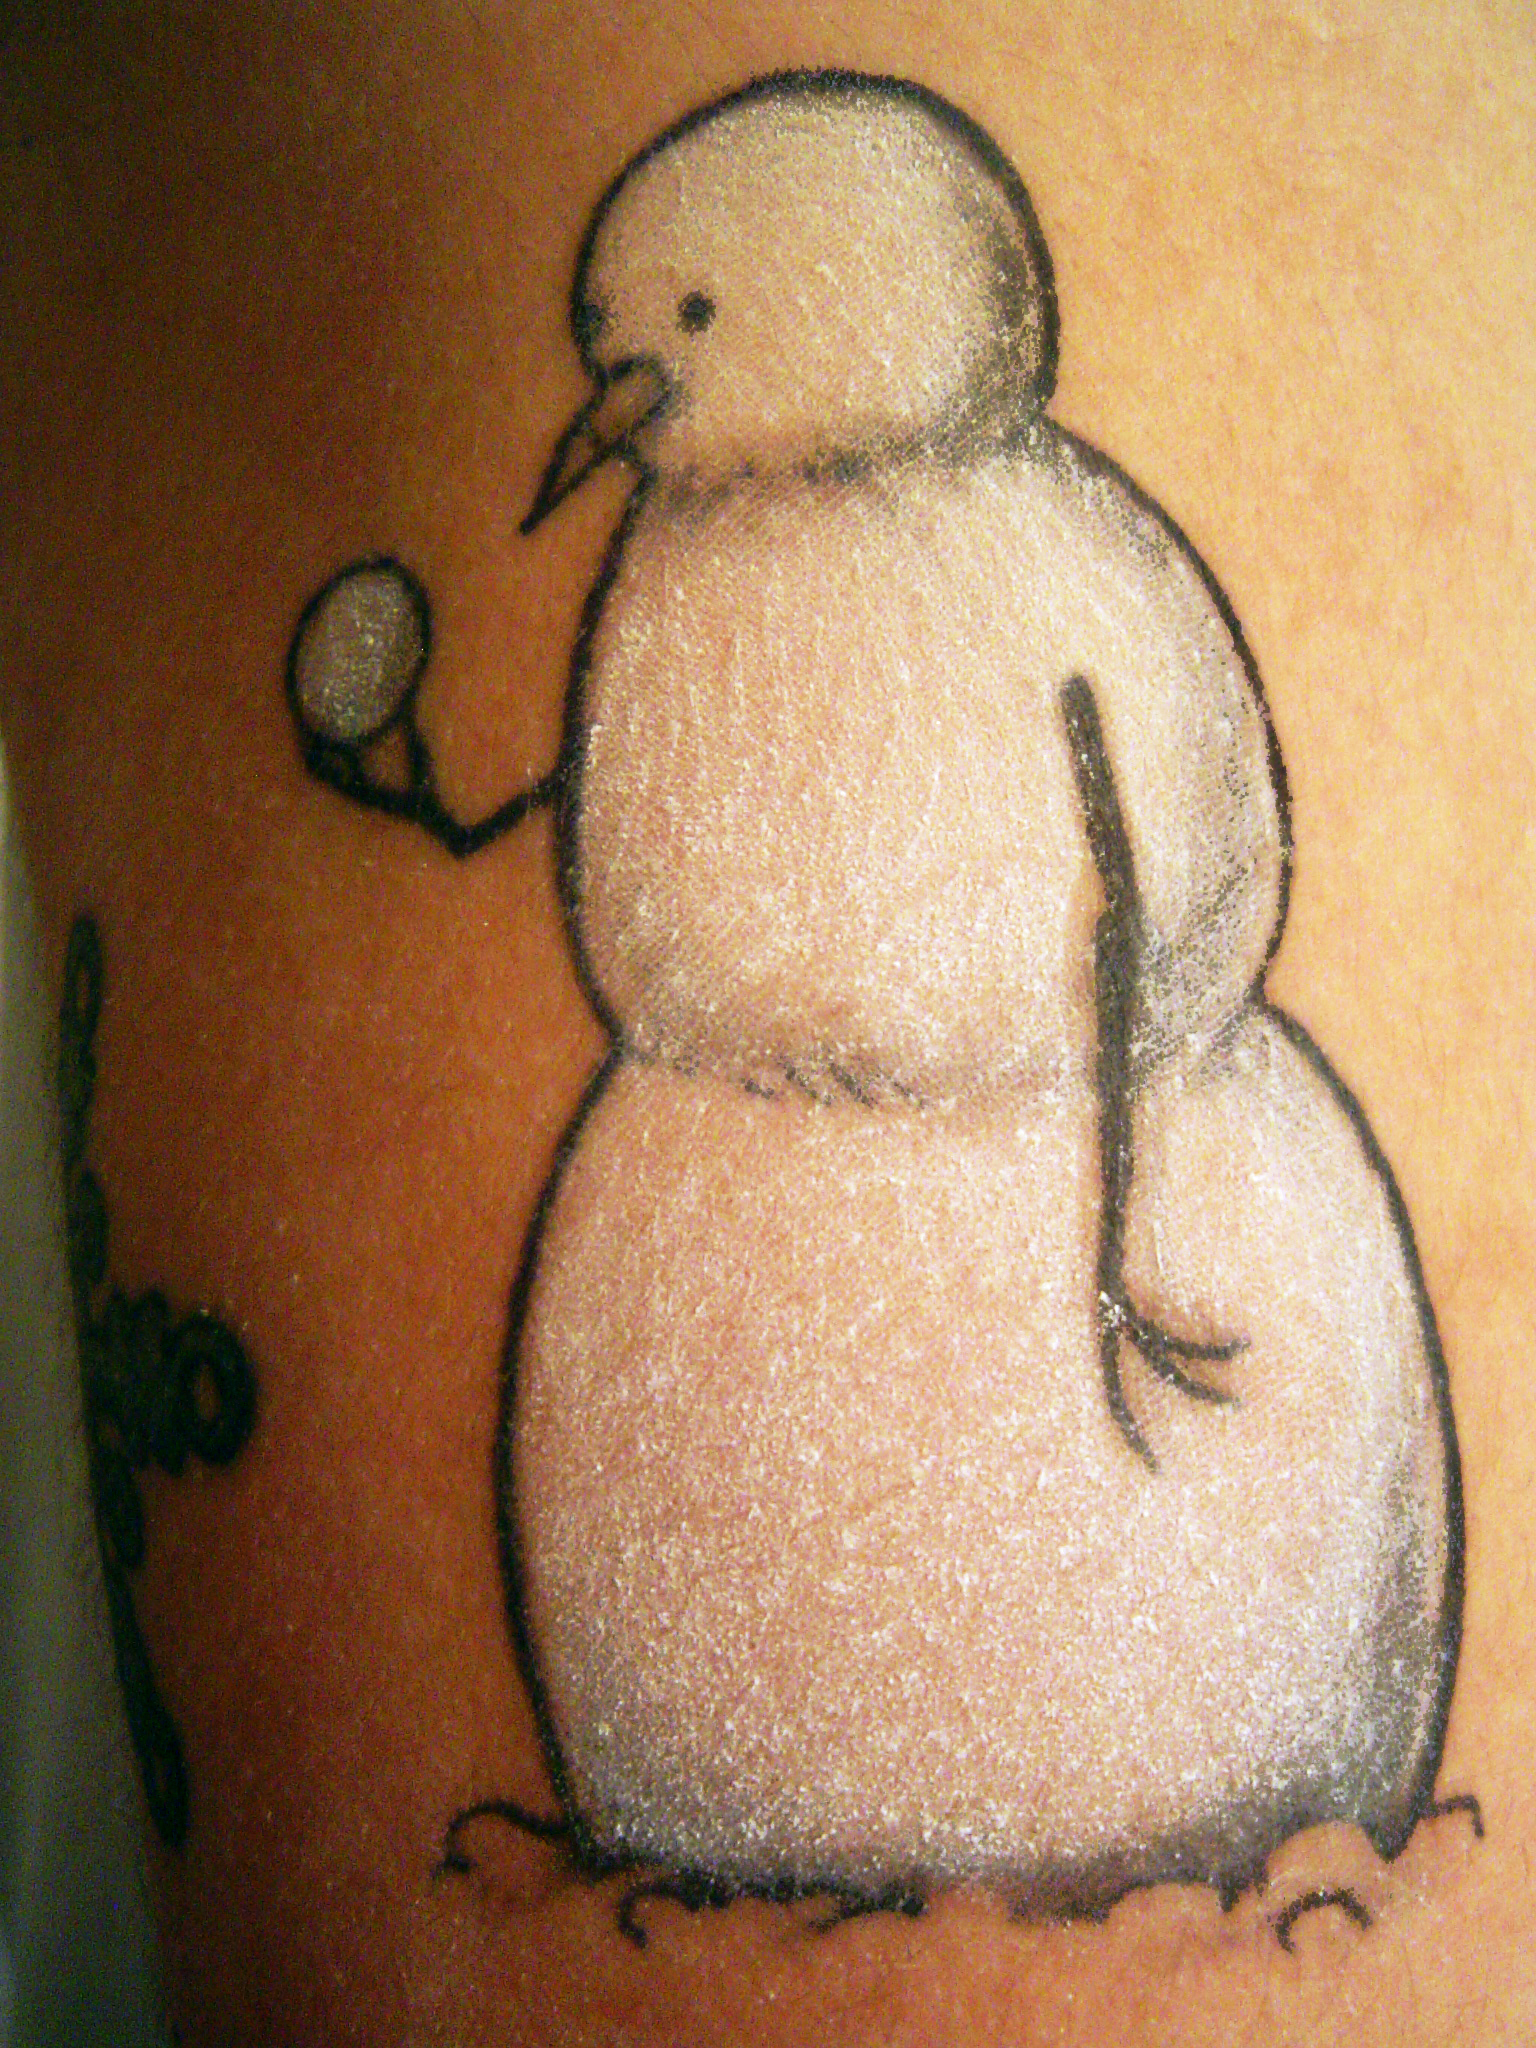 Simple-sad-snowman-tattoo.jpg